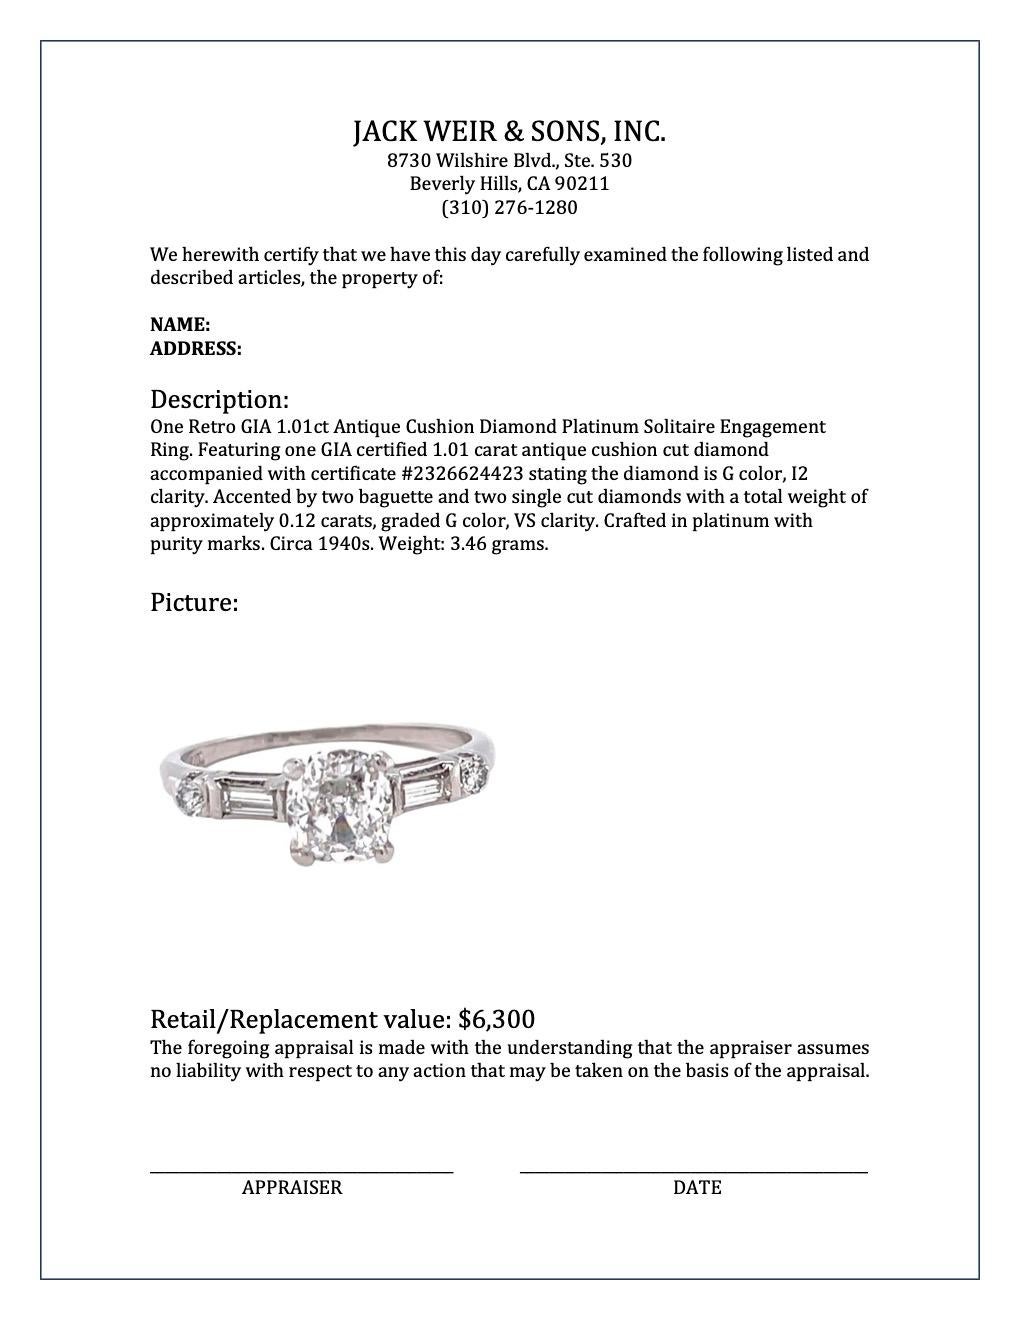 Retro GIA 1.01 Carat Antique Cushion Cut Diamond Platinum Engagement Ring 4